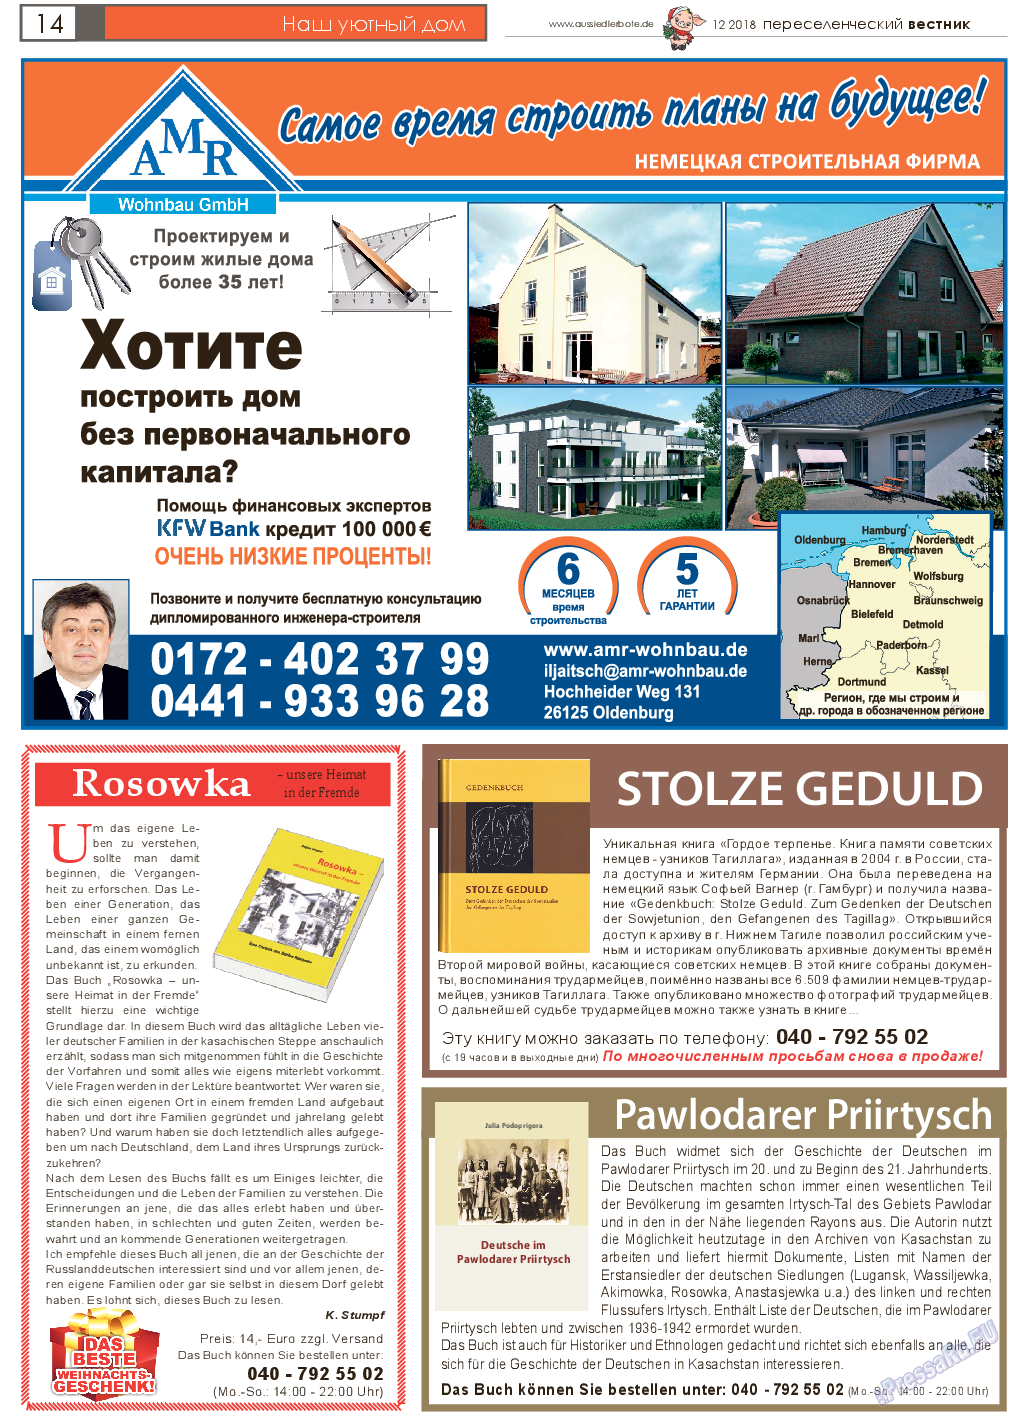 Переселенческий вестник, газета. 2018 №12 стр.14